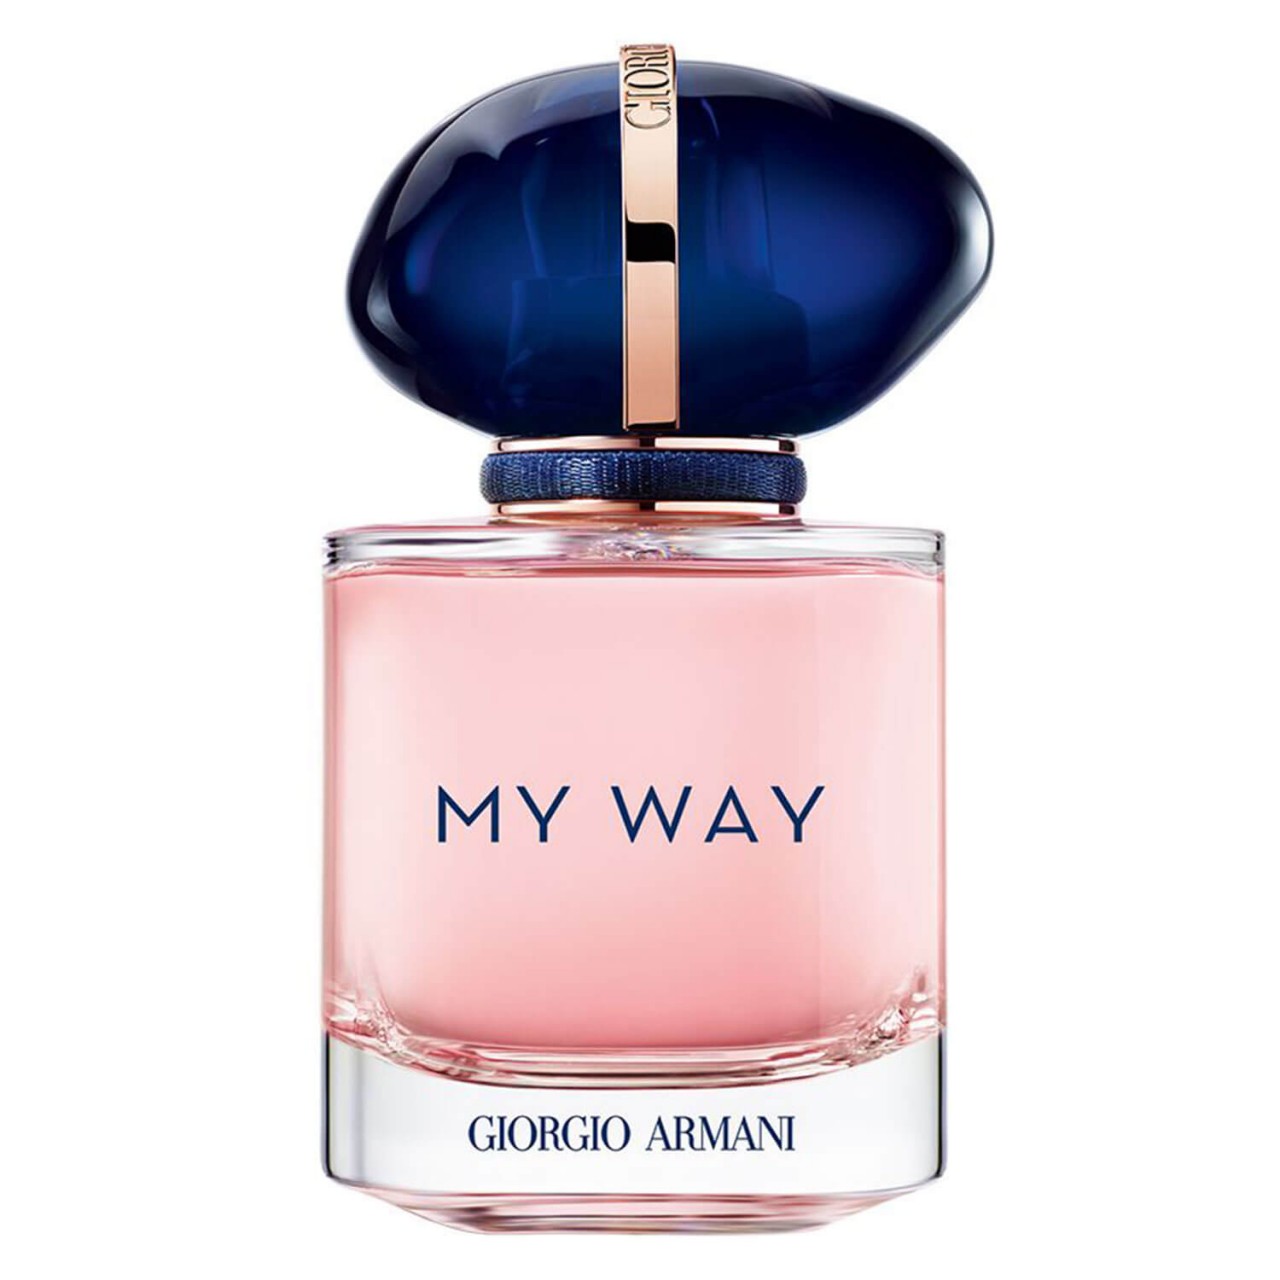 MY WAY - Eau de Parfum von Giorgio Armani